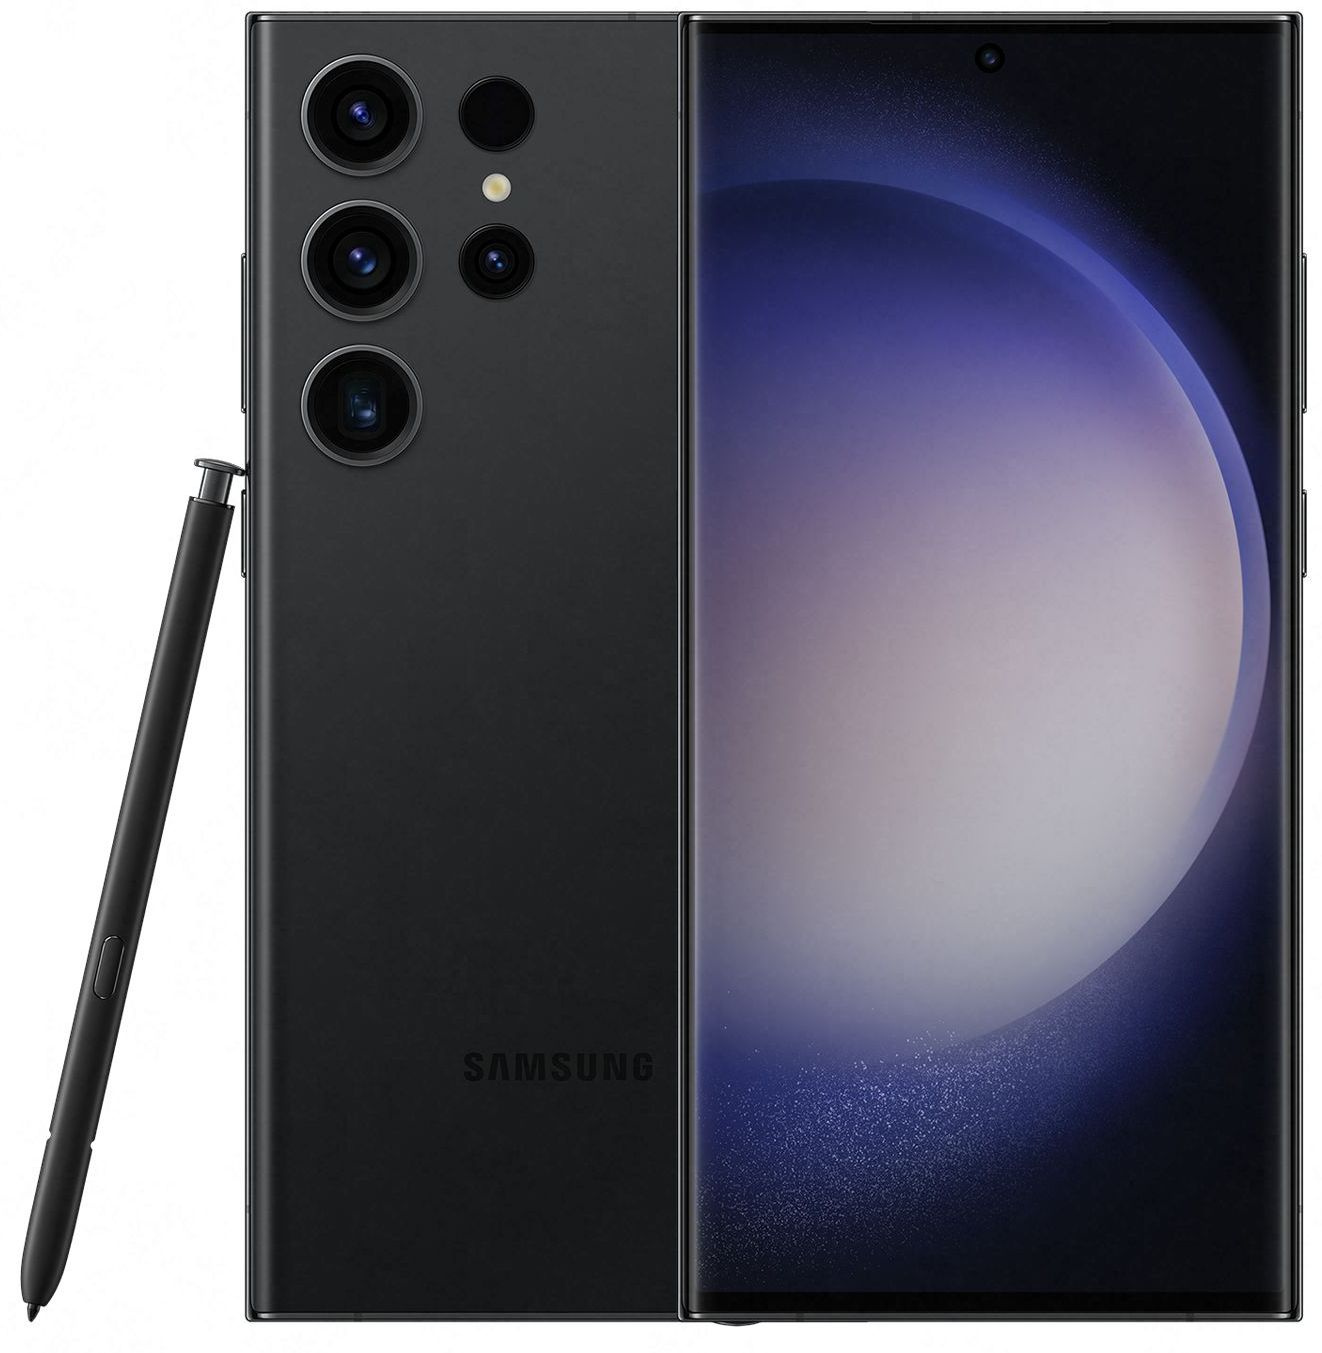 Смартфон Samsung SM-S918B Galaxy S23 Ultra 5G 512Gb 12Gb черный фантом моноблок 3G 4G 2Sim 6.8" 1440x3088 Android 13 200Mpix 802.11 a/b/g/n/ac/ax NFC GPS GSM900/1800 GSM1900 TouchSc Protect